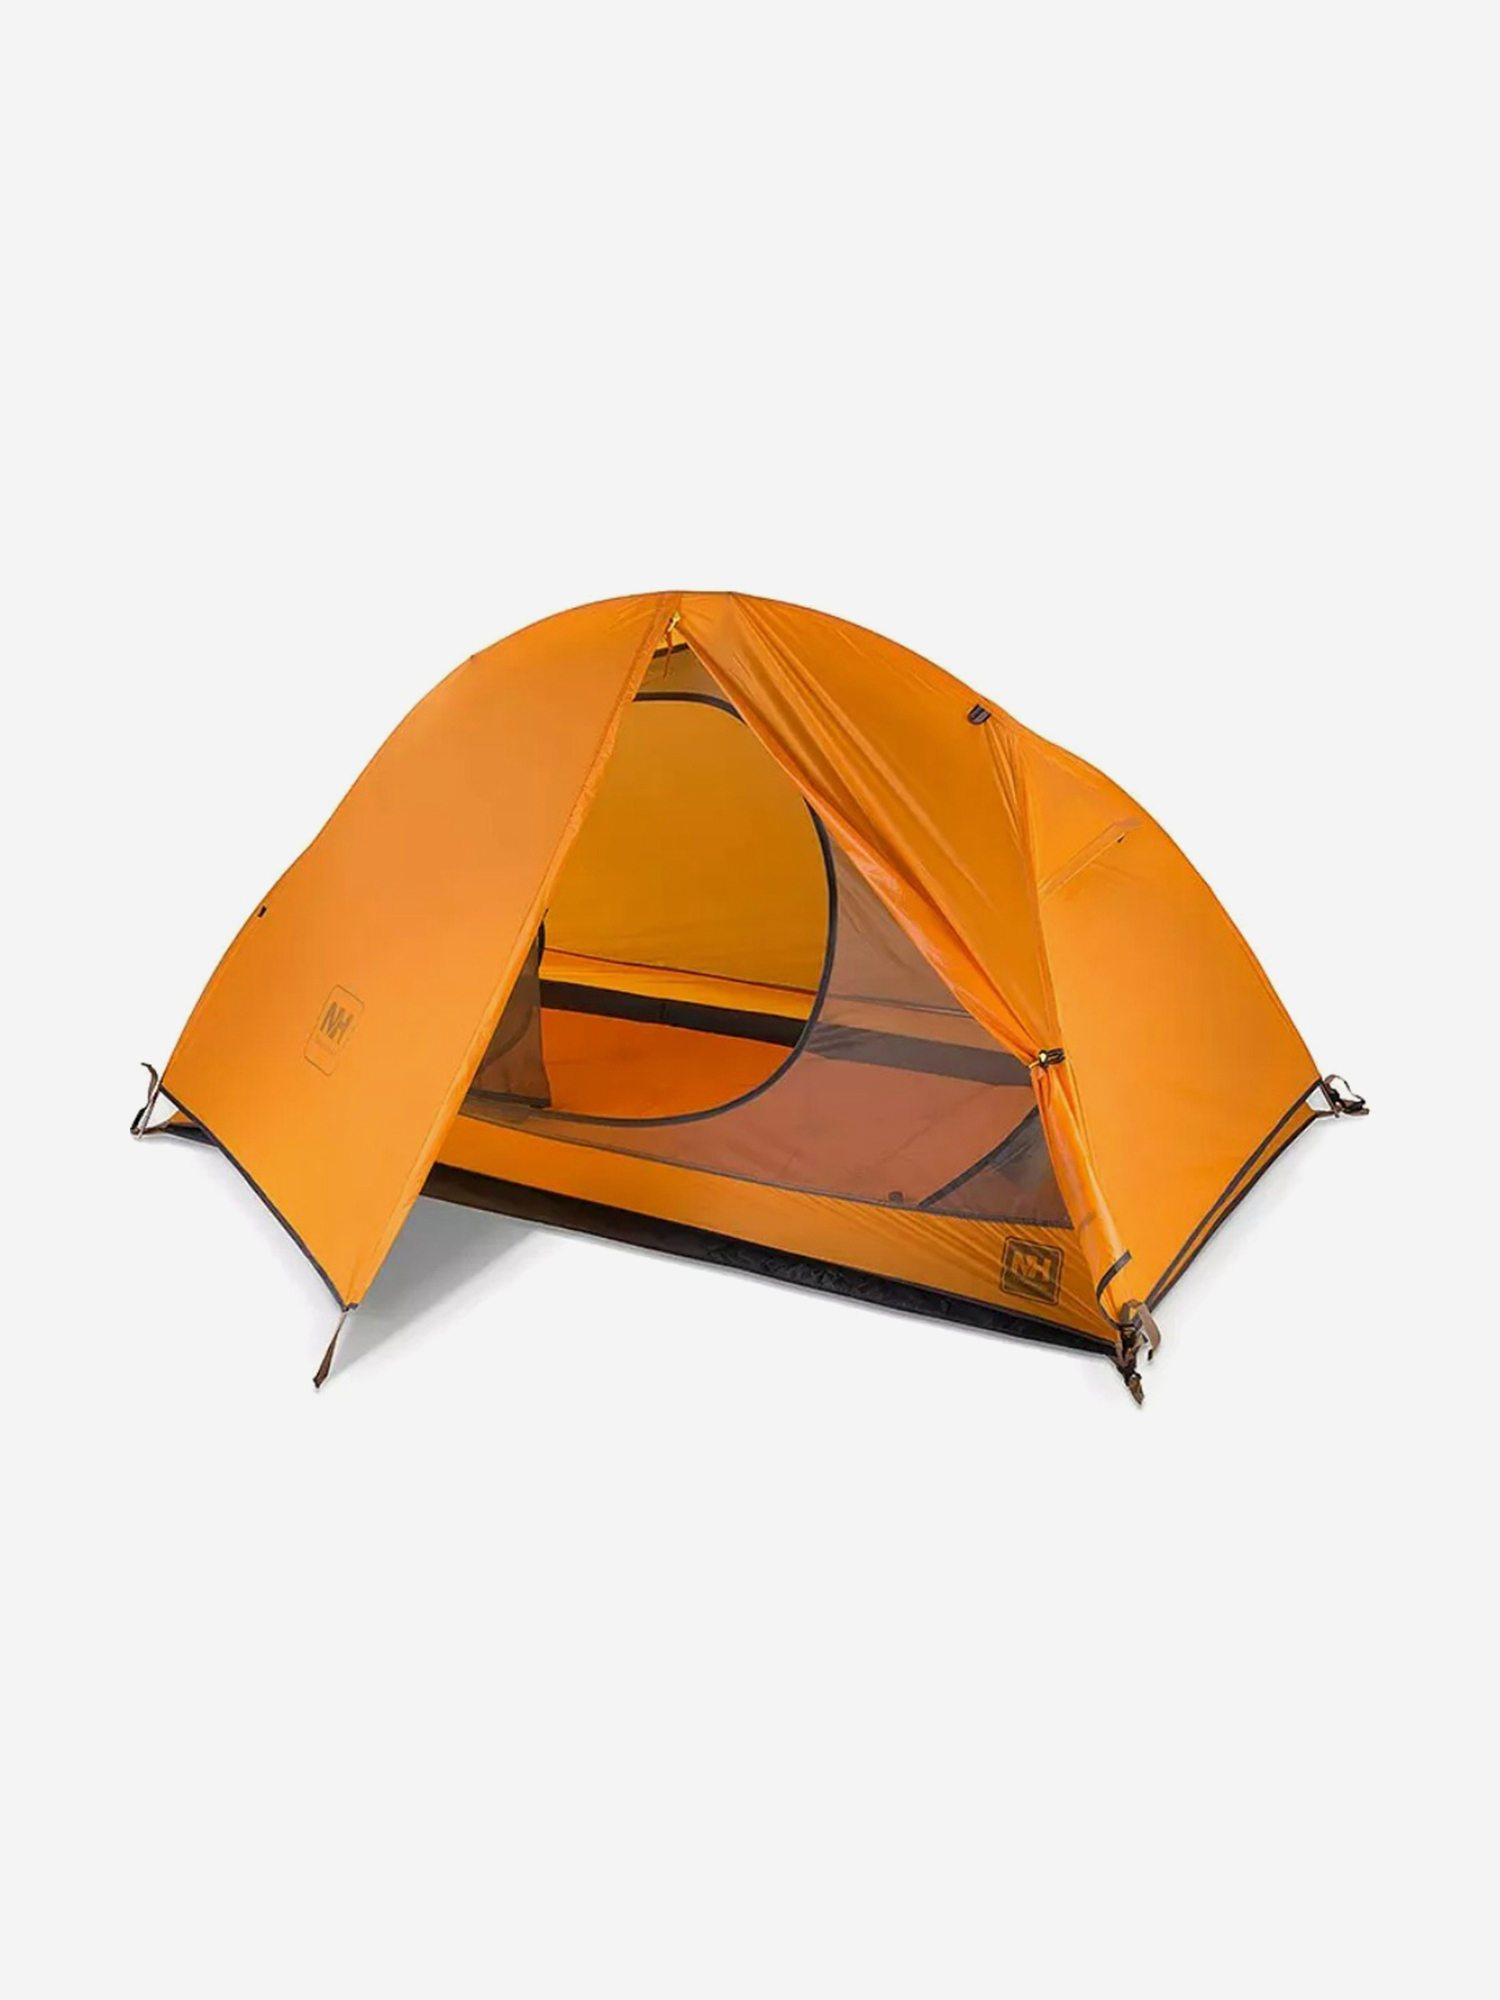 Палатка Naturehike Cycling Si 1-местная, алюминиевый каркас, сверхлегкая, оранжевый, Оранжевый палатка naturehike cloud tunnel 2 местная алюминиевый каркас оранжевая оранжевый